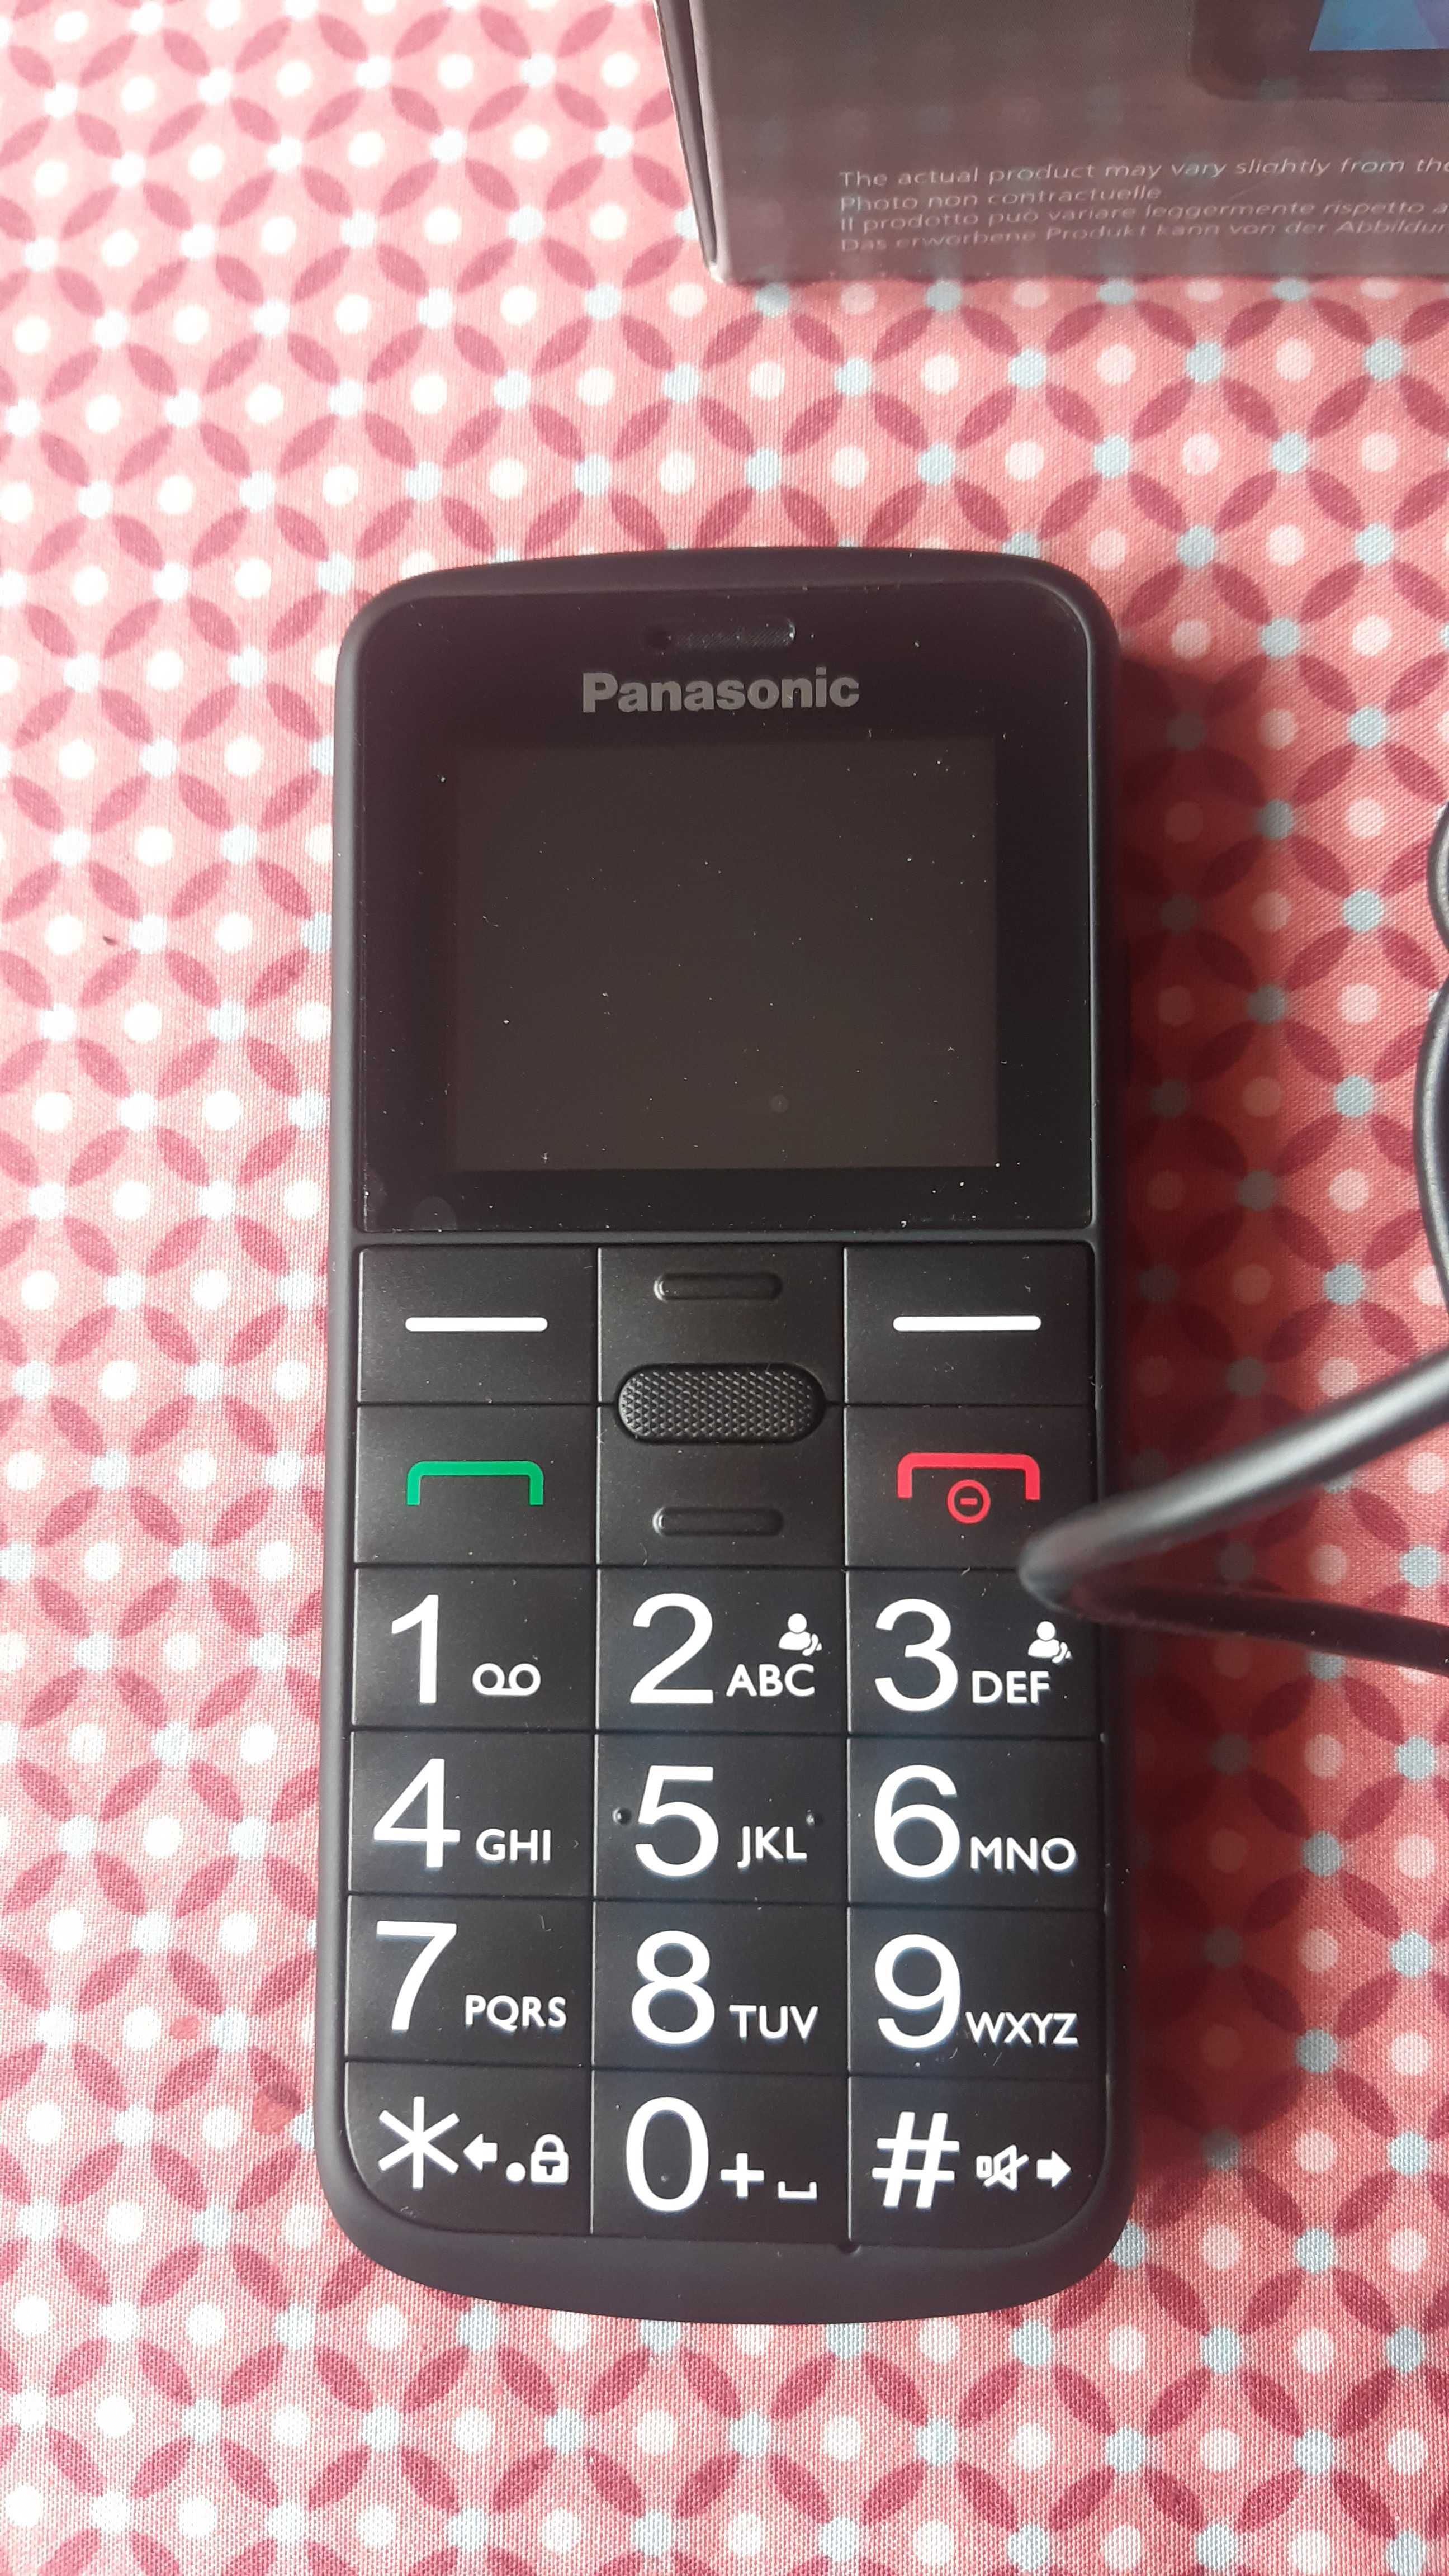 Telefon Panasonic KX-TU110EXB, dla starszych osób